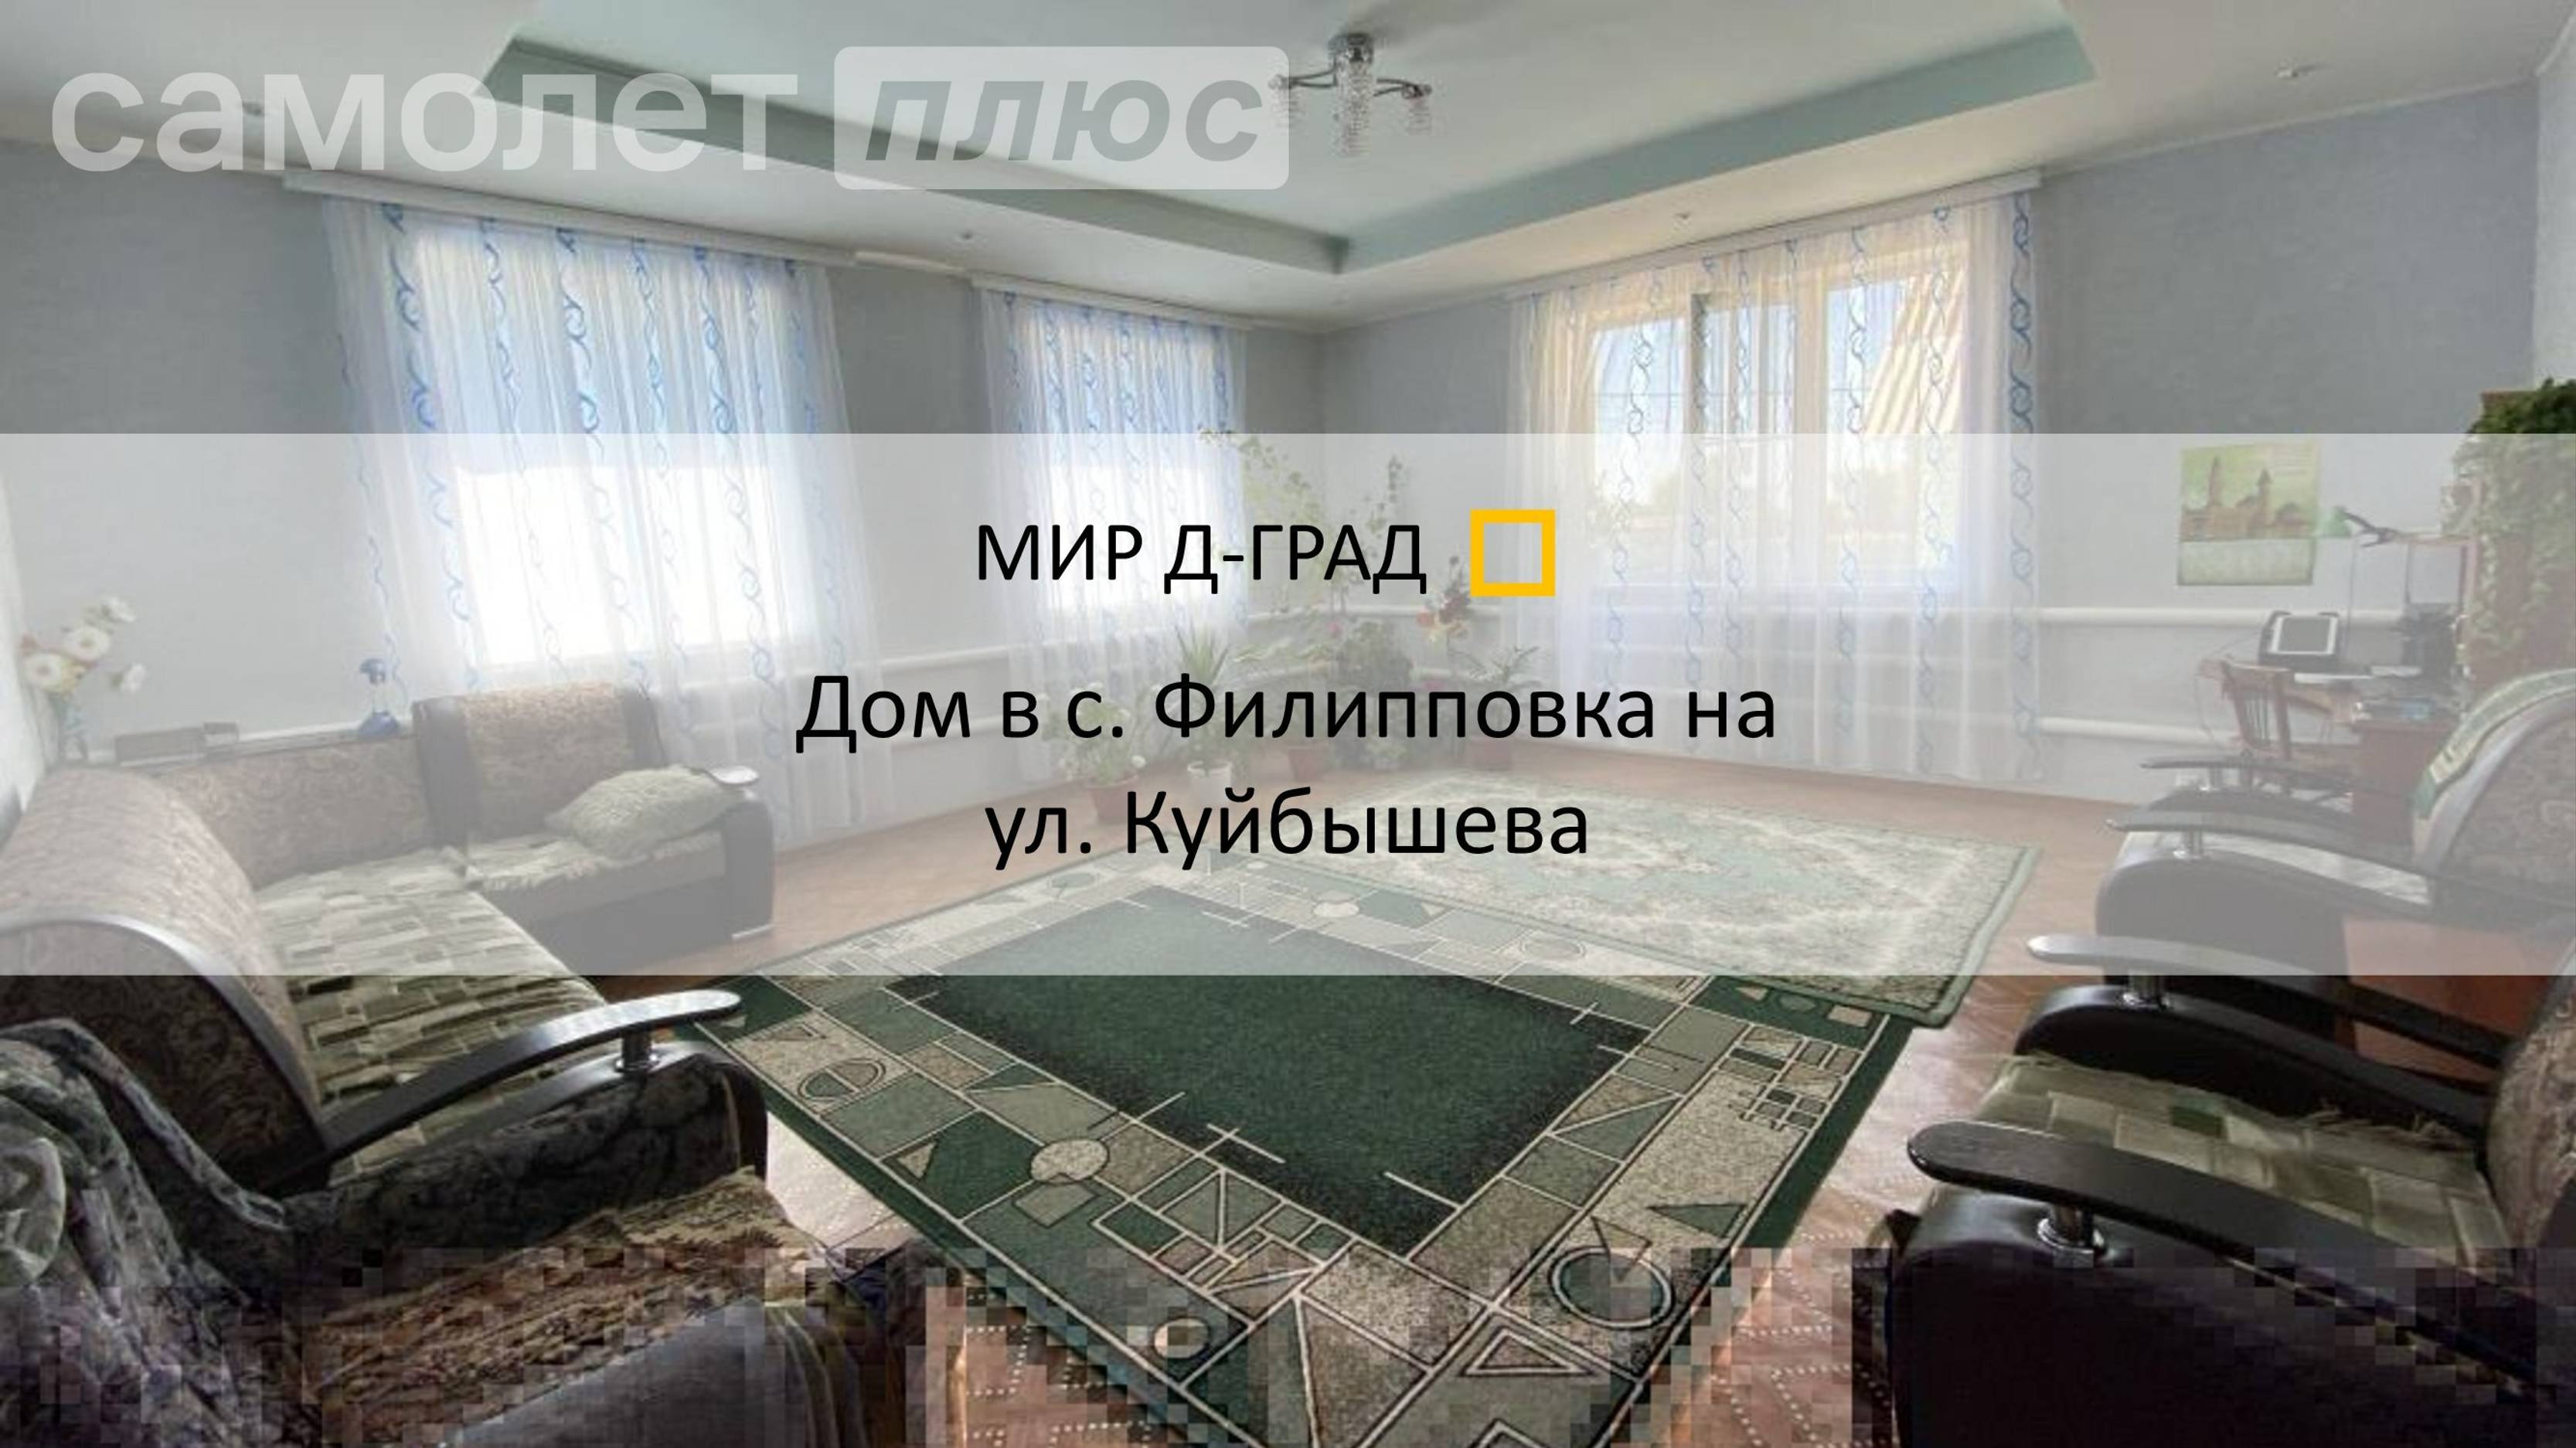 Дом в с. Филипповка на ул. Куйбышева, д. 4А, 177 м², на участке 15 соток, Ульяновская обл.